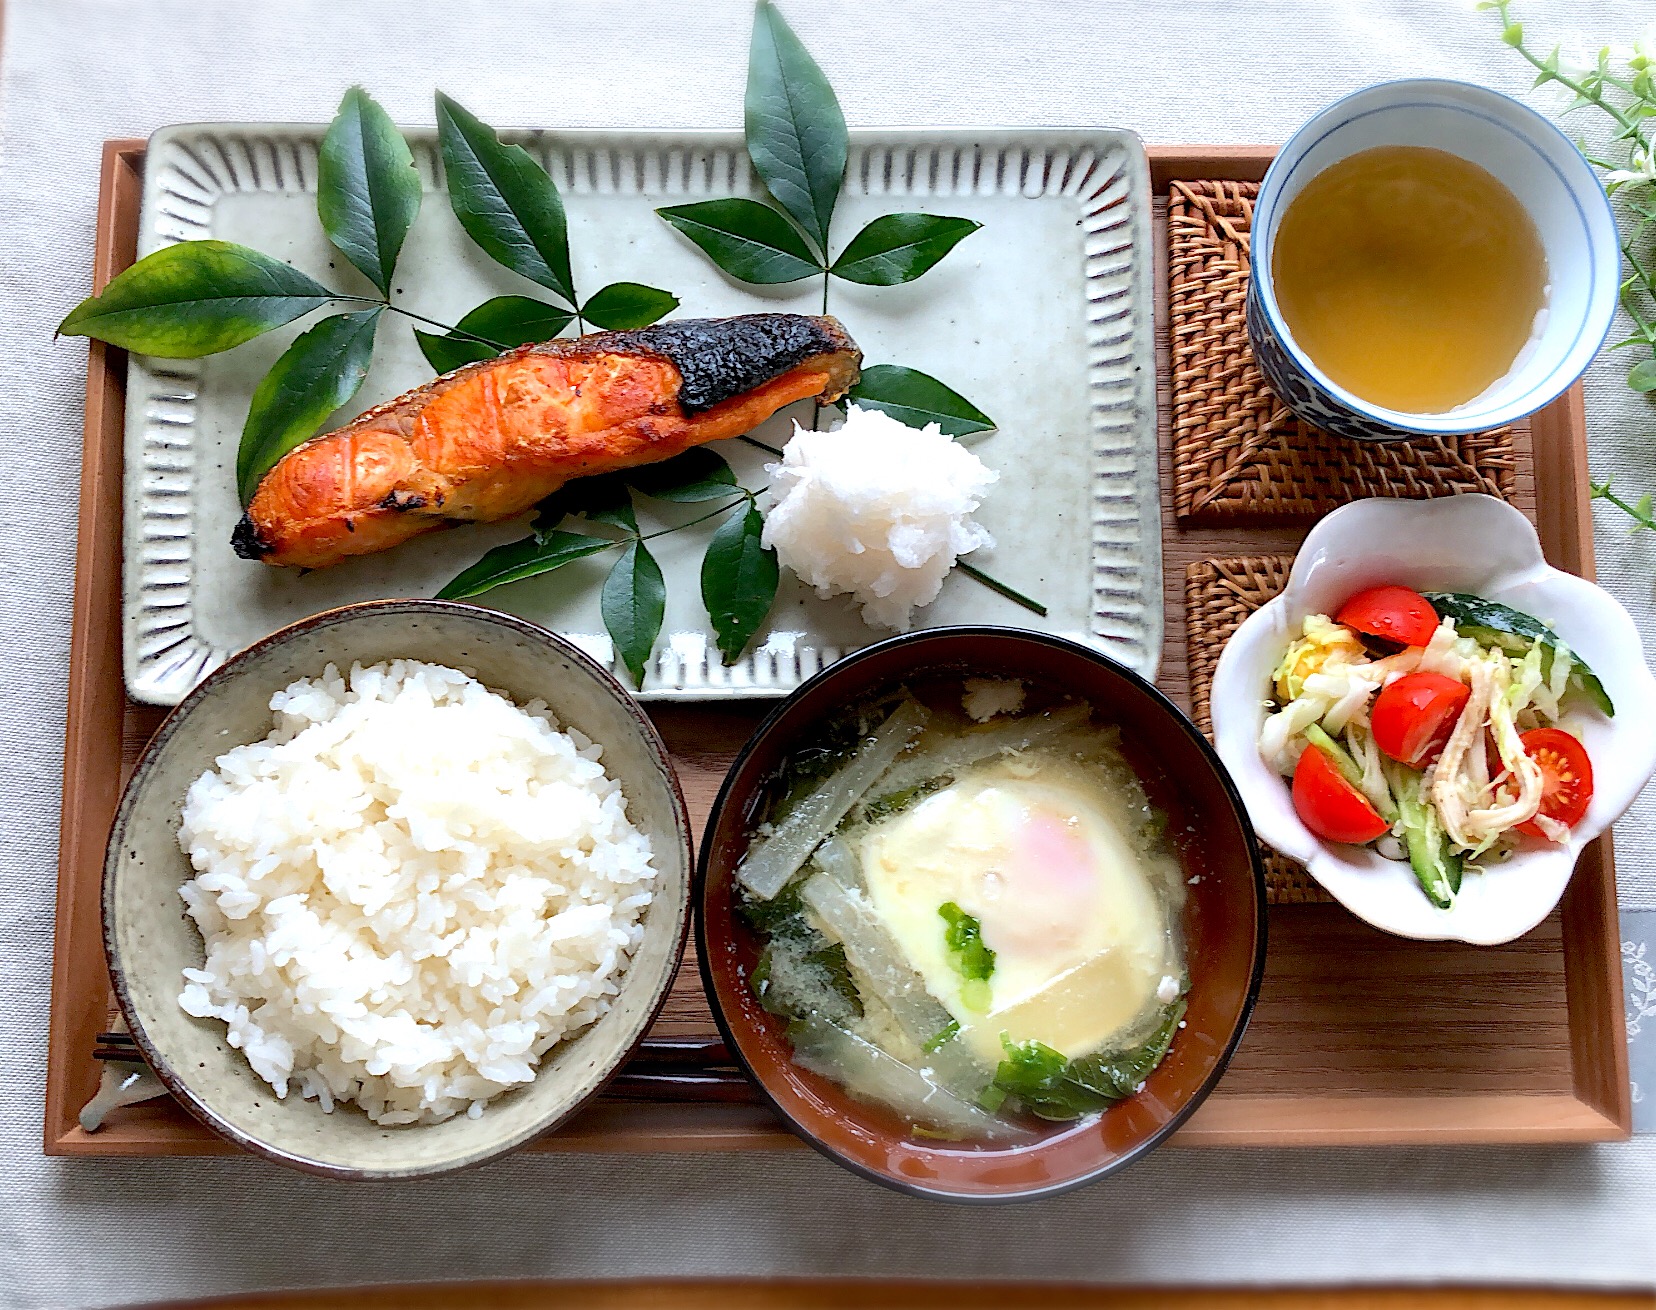 焼き魚定食 ダイエット料理グランプリ19 ヤマサ醤油株式会社